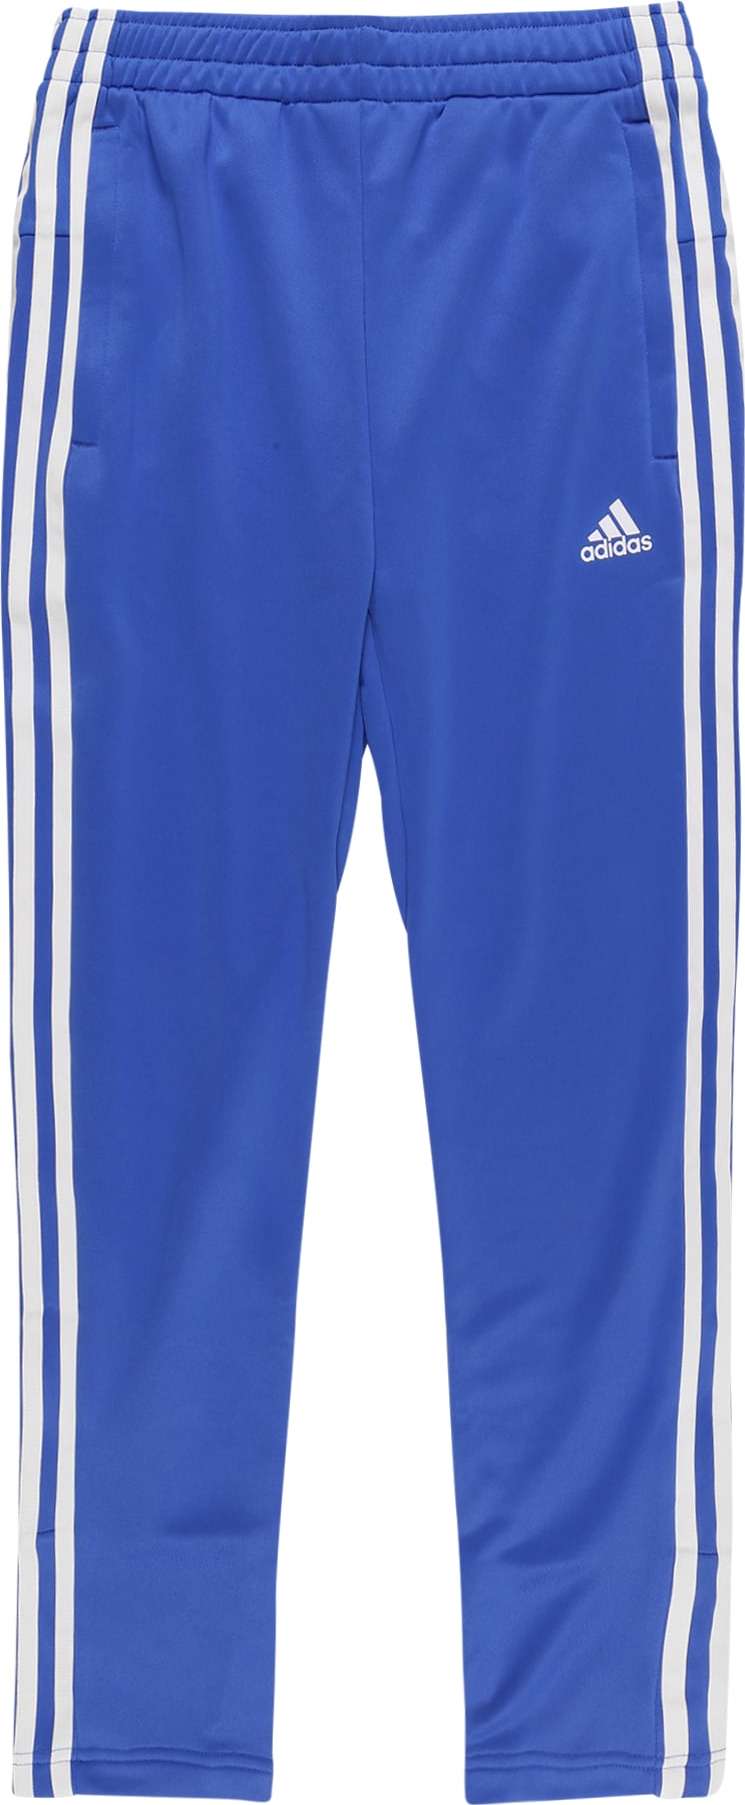 ADIDAS PERFORMANCE Sportovní kalhoty tmavě modrá / bílá